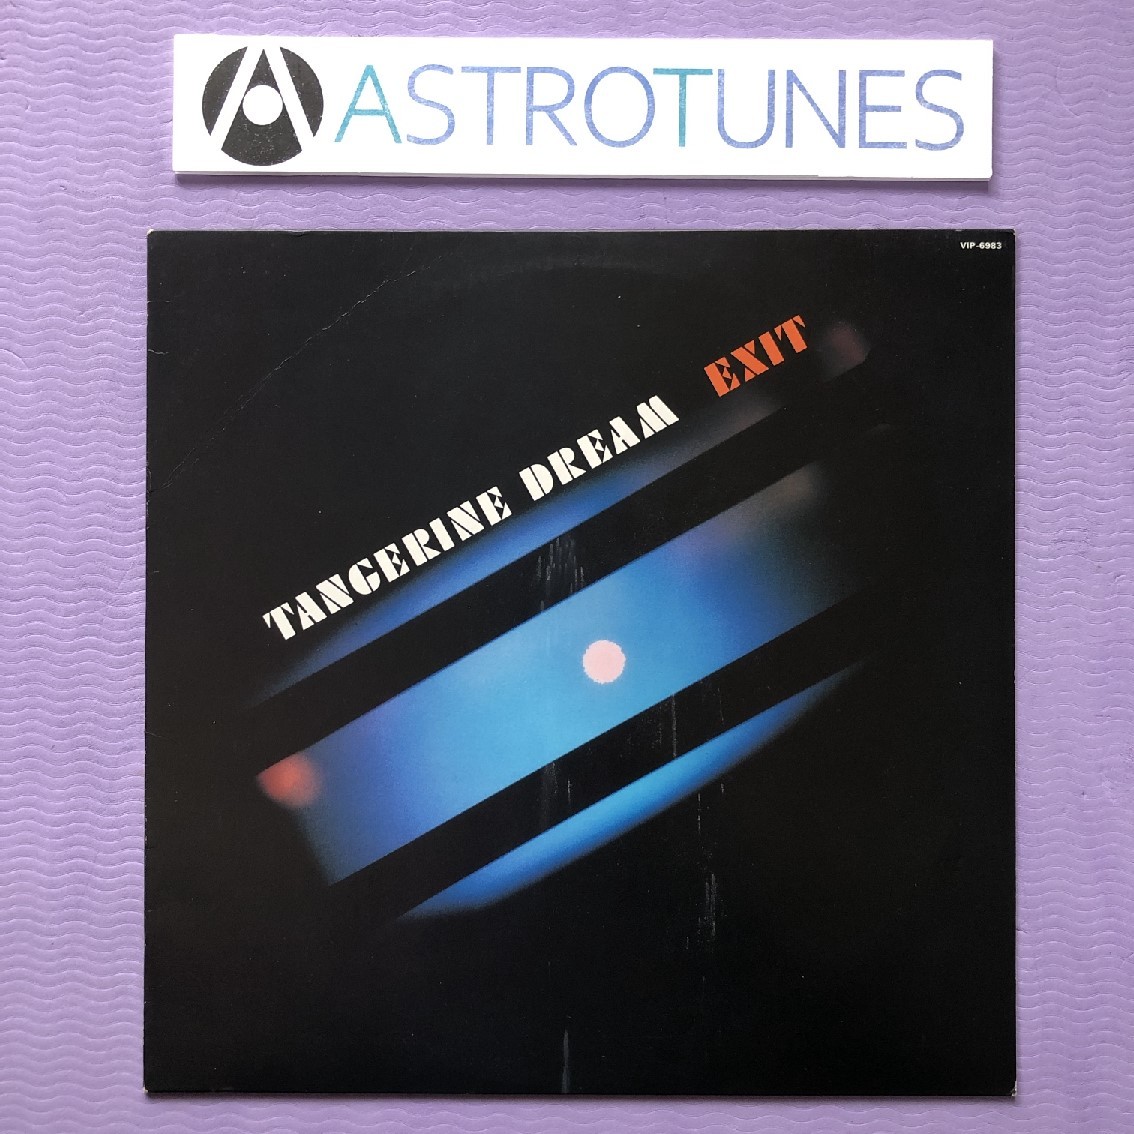 レア盤 タンジェリン・ドリーム Tangerine Dream 1981年 LPレコード Exit 国内盤 オリジナルリリース盤 Techno / electro_画像1